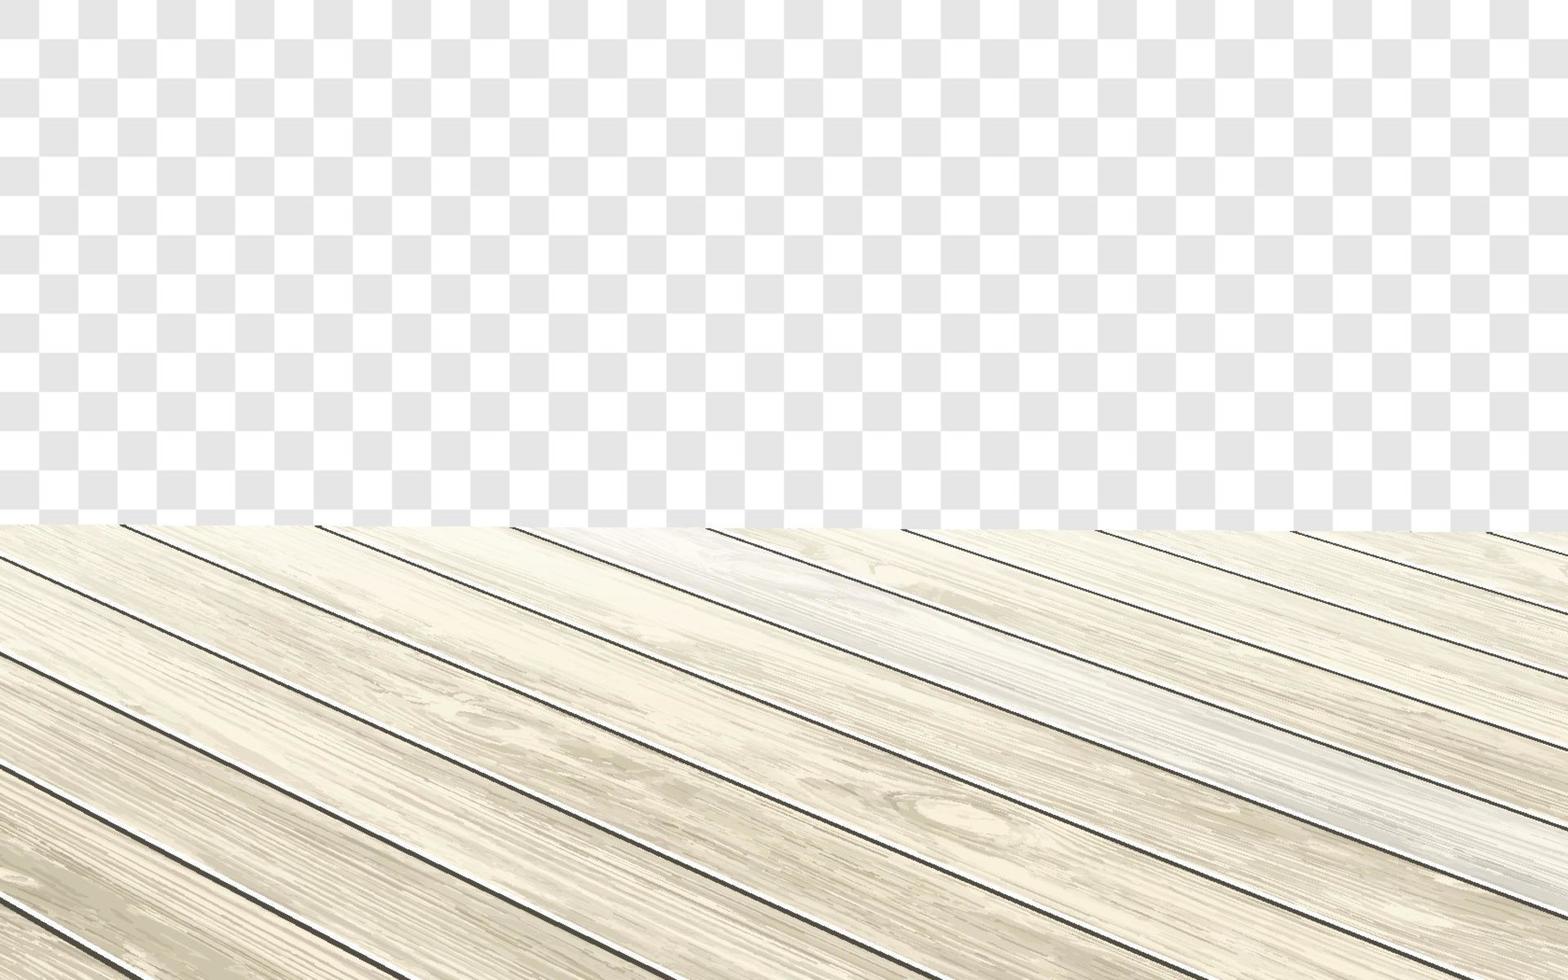 mesa de madera con superficie envejecida, ilustración vectorial realista. mesa de comedor vintage hecha de madera oscurecida, textura de tablón realista. escritorio vacío aislado en la pared blanca. vector